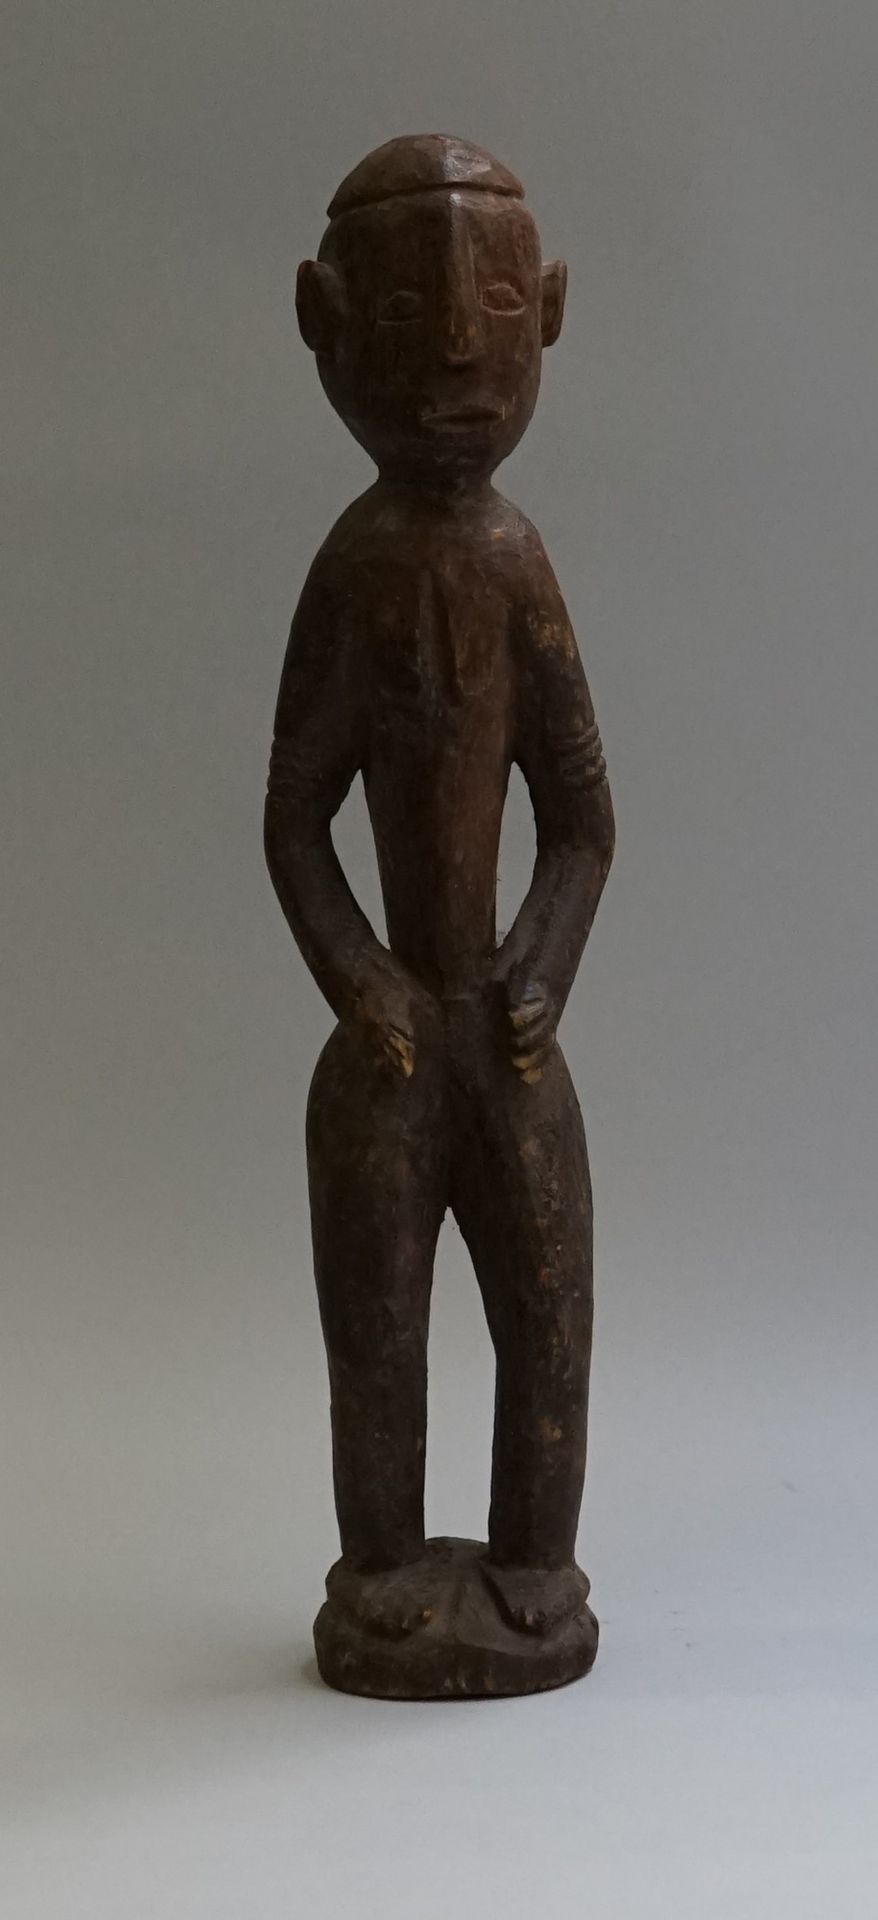 Null 拟人化的雕像，显示一个站立的人物，双手放在大腿上部。硬木。

马里。

高：36厘米